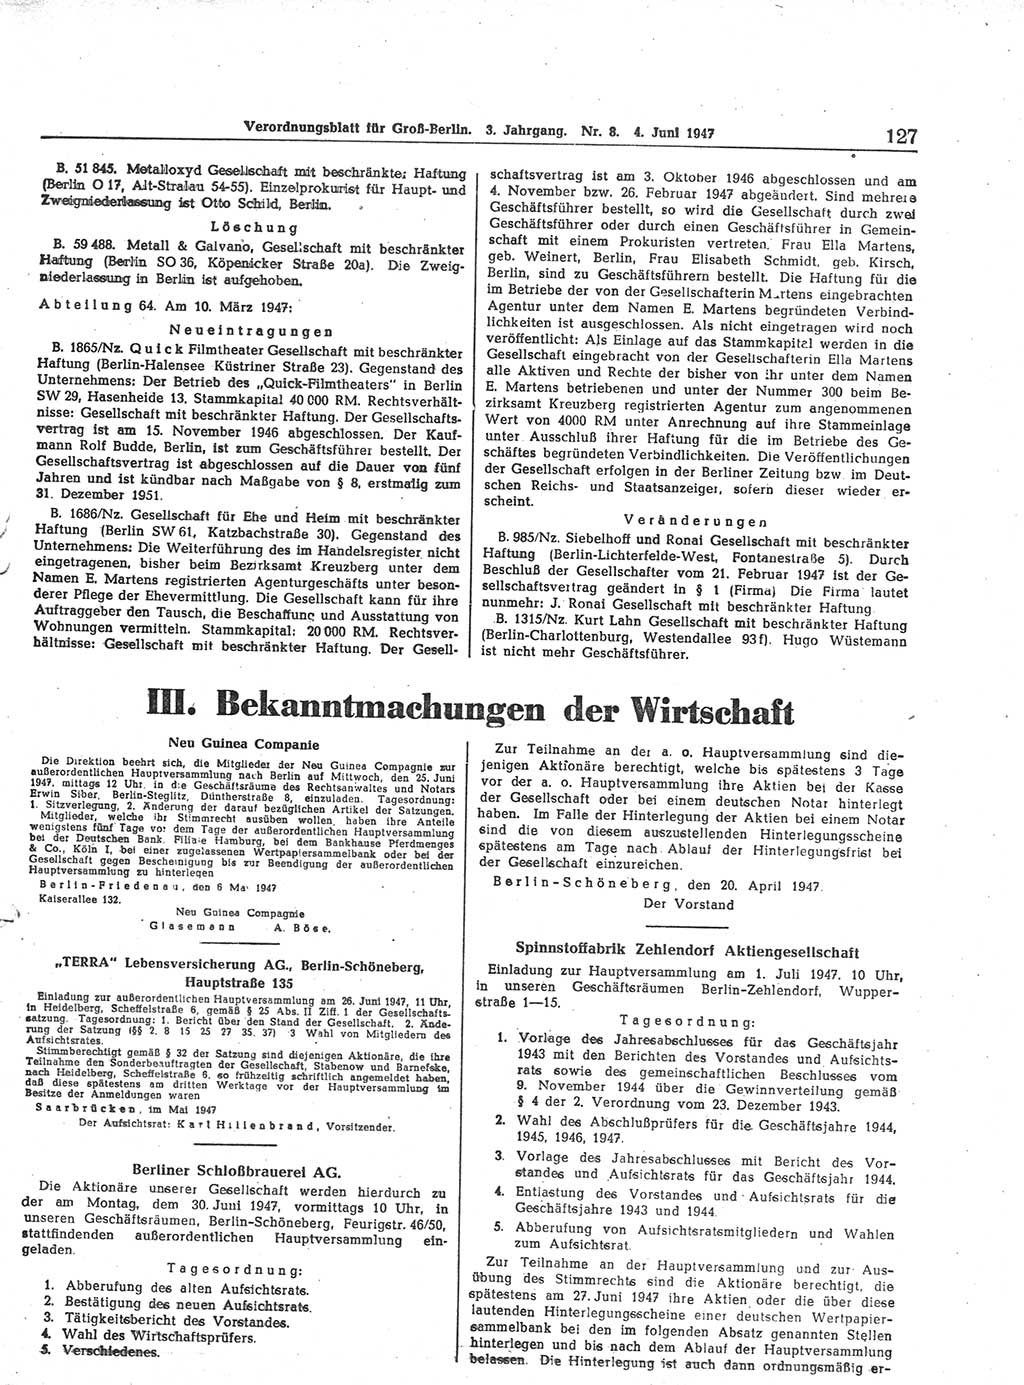 Verordnungsblatt (VOBl.) für Groß-Berlin 1947, Seite 127 (VOBl. Bln. 1947, S. 127)